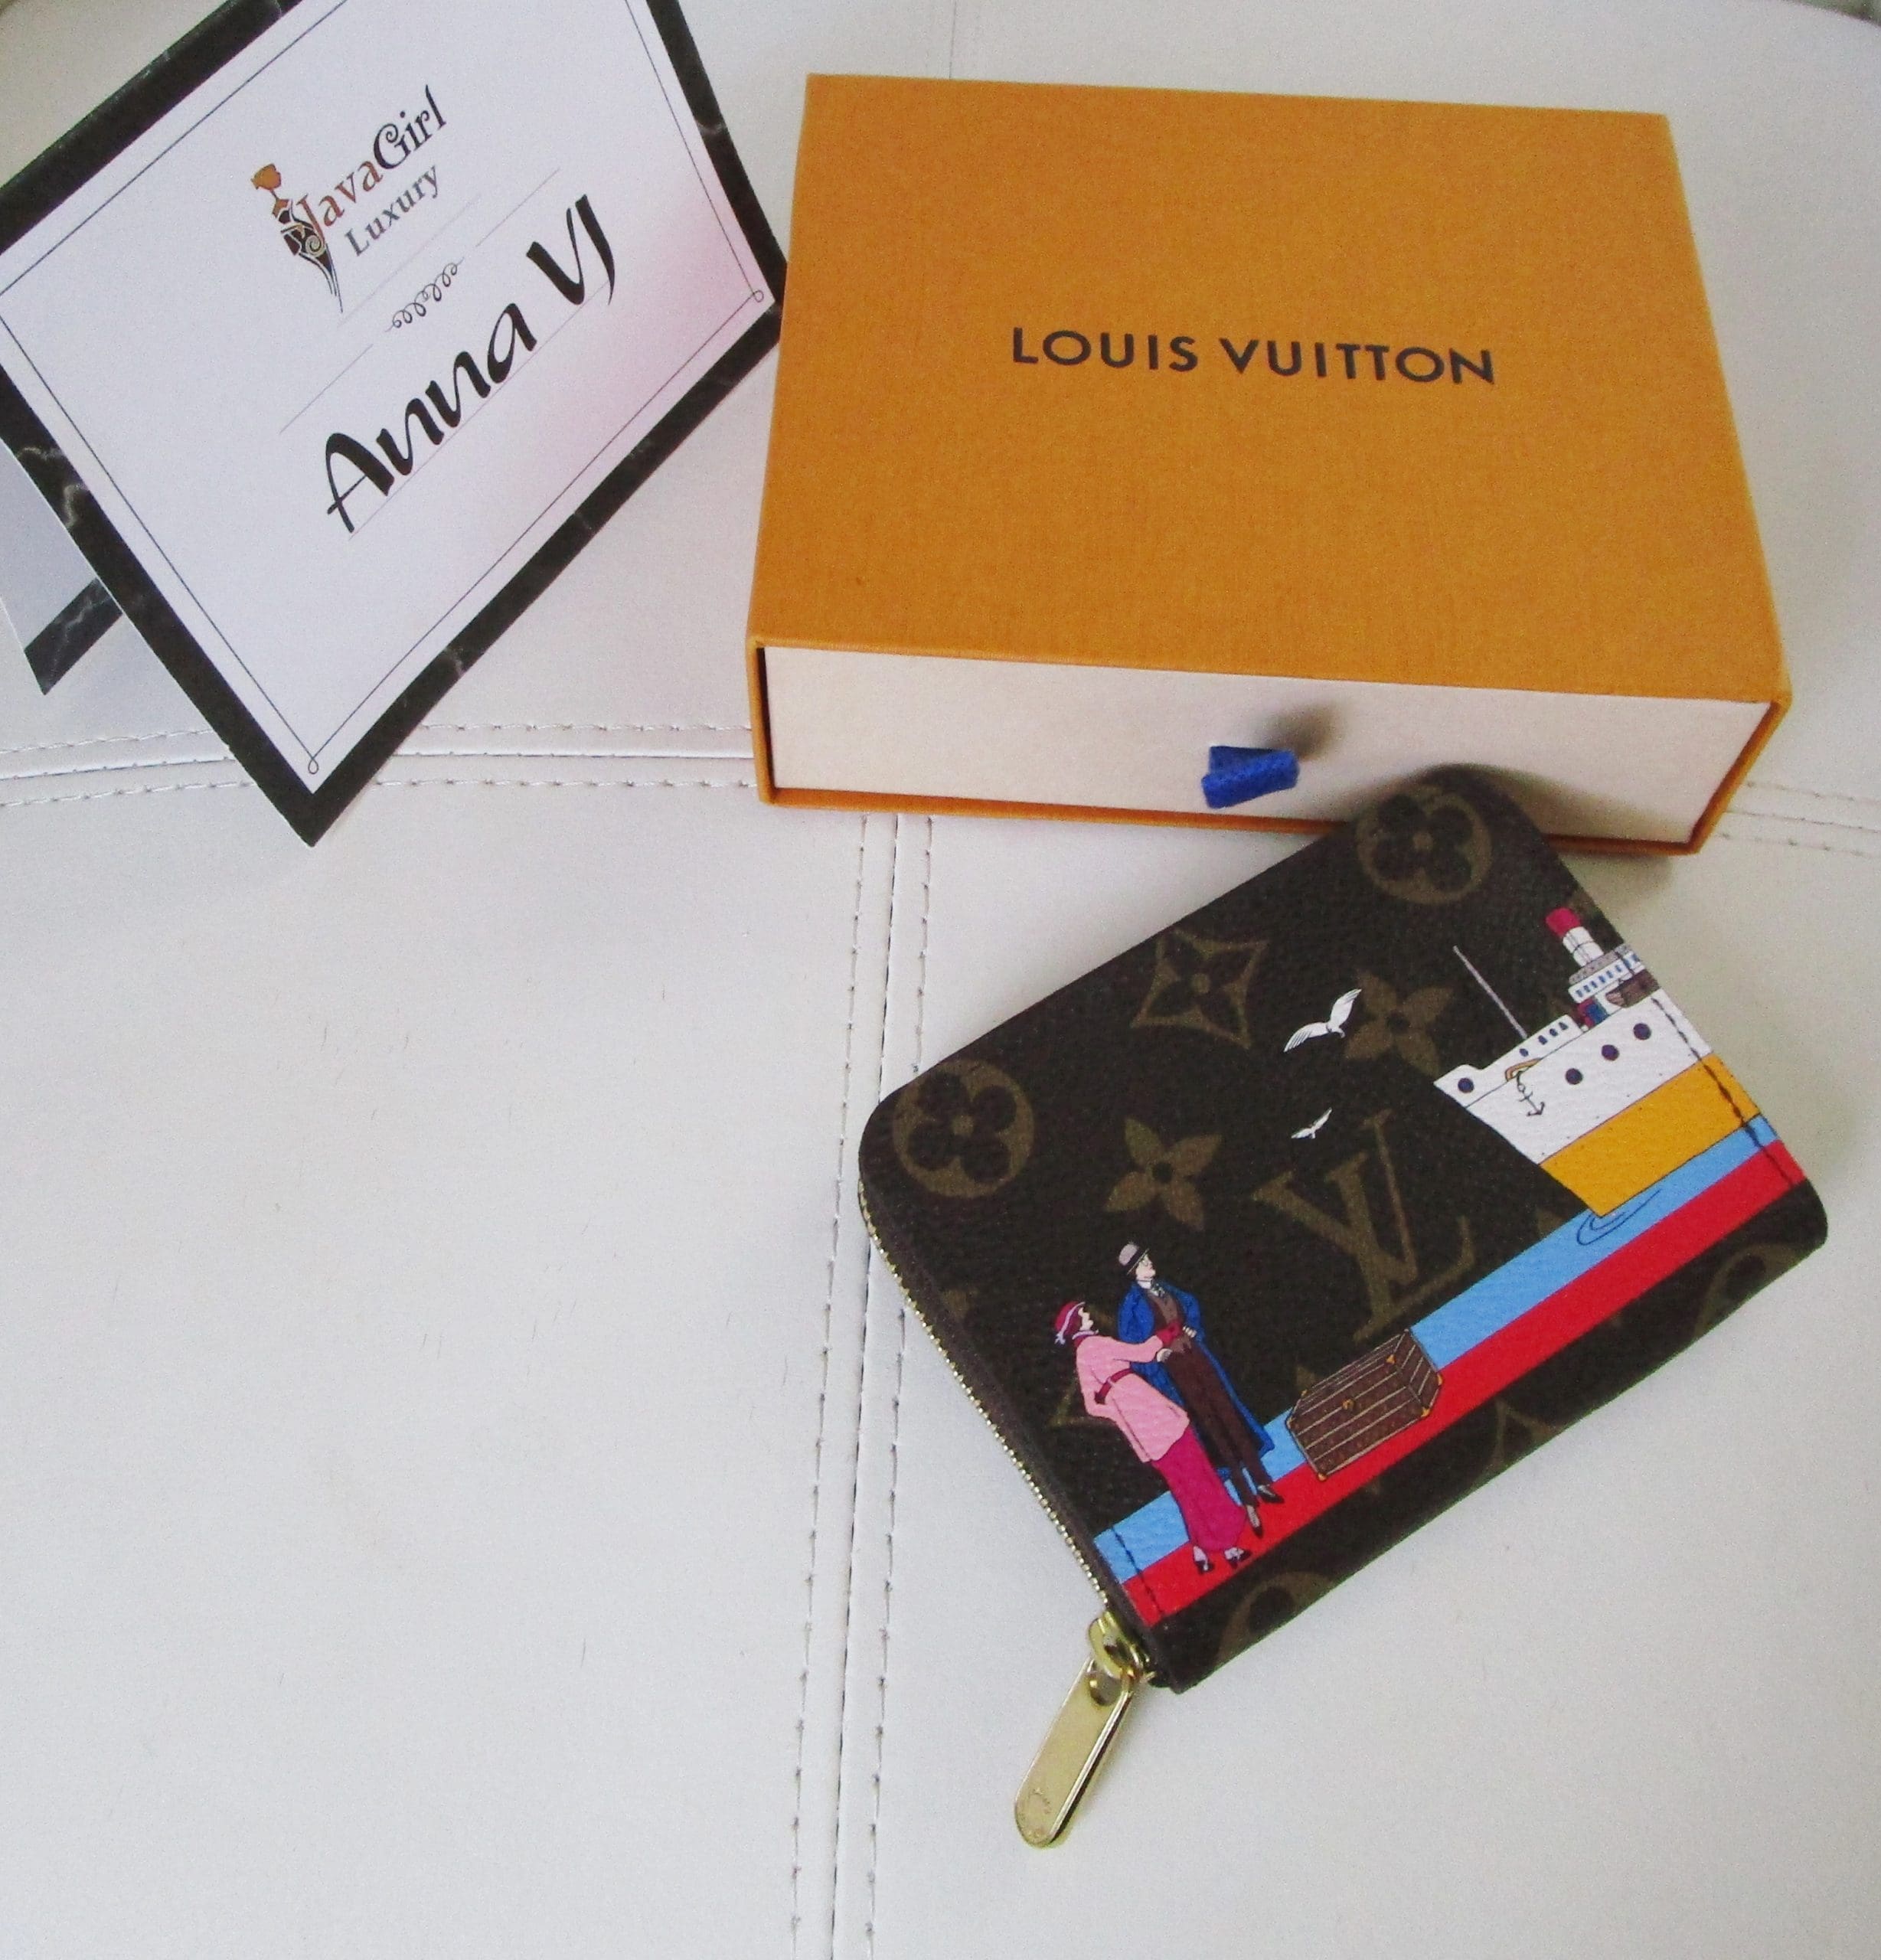 Louis Vuitton Monogram Canvas Zippy Coin Purse at Jill's Consignment